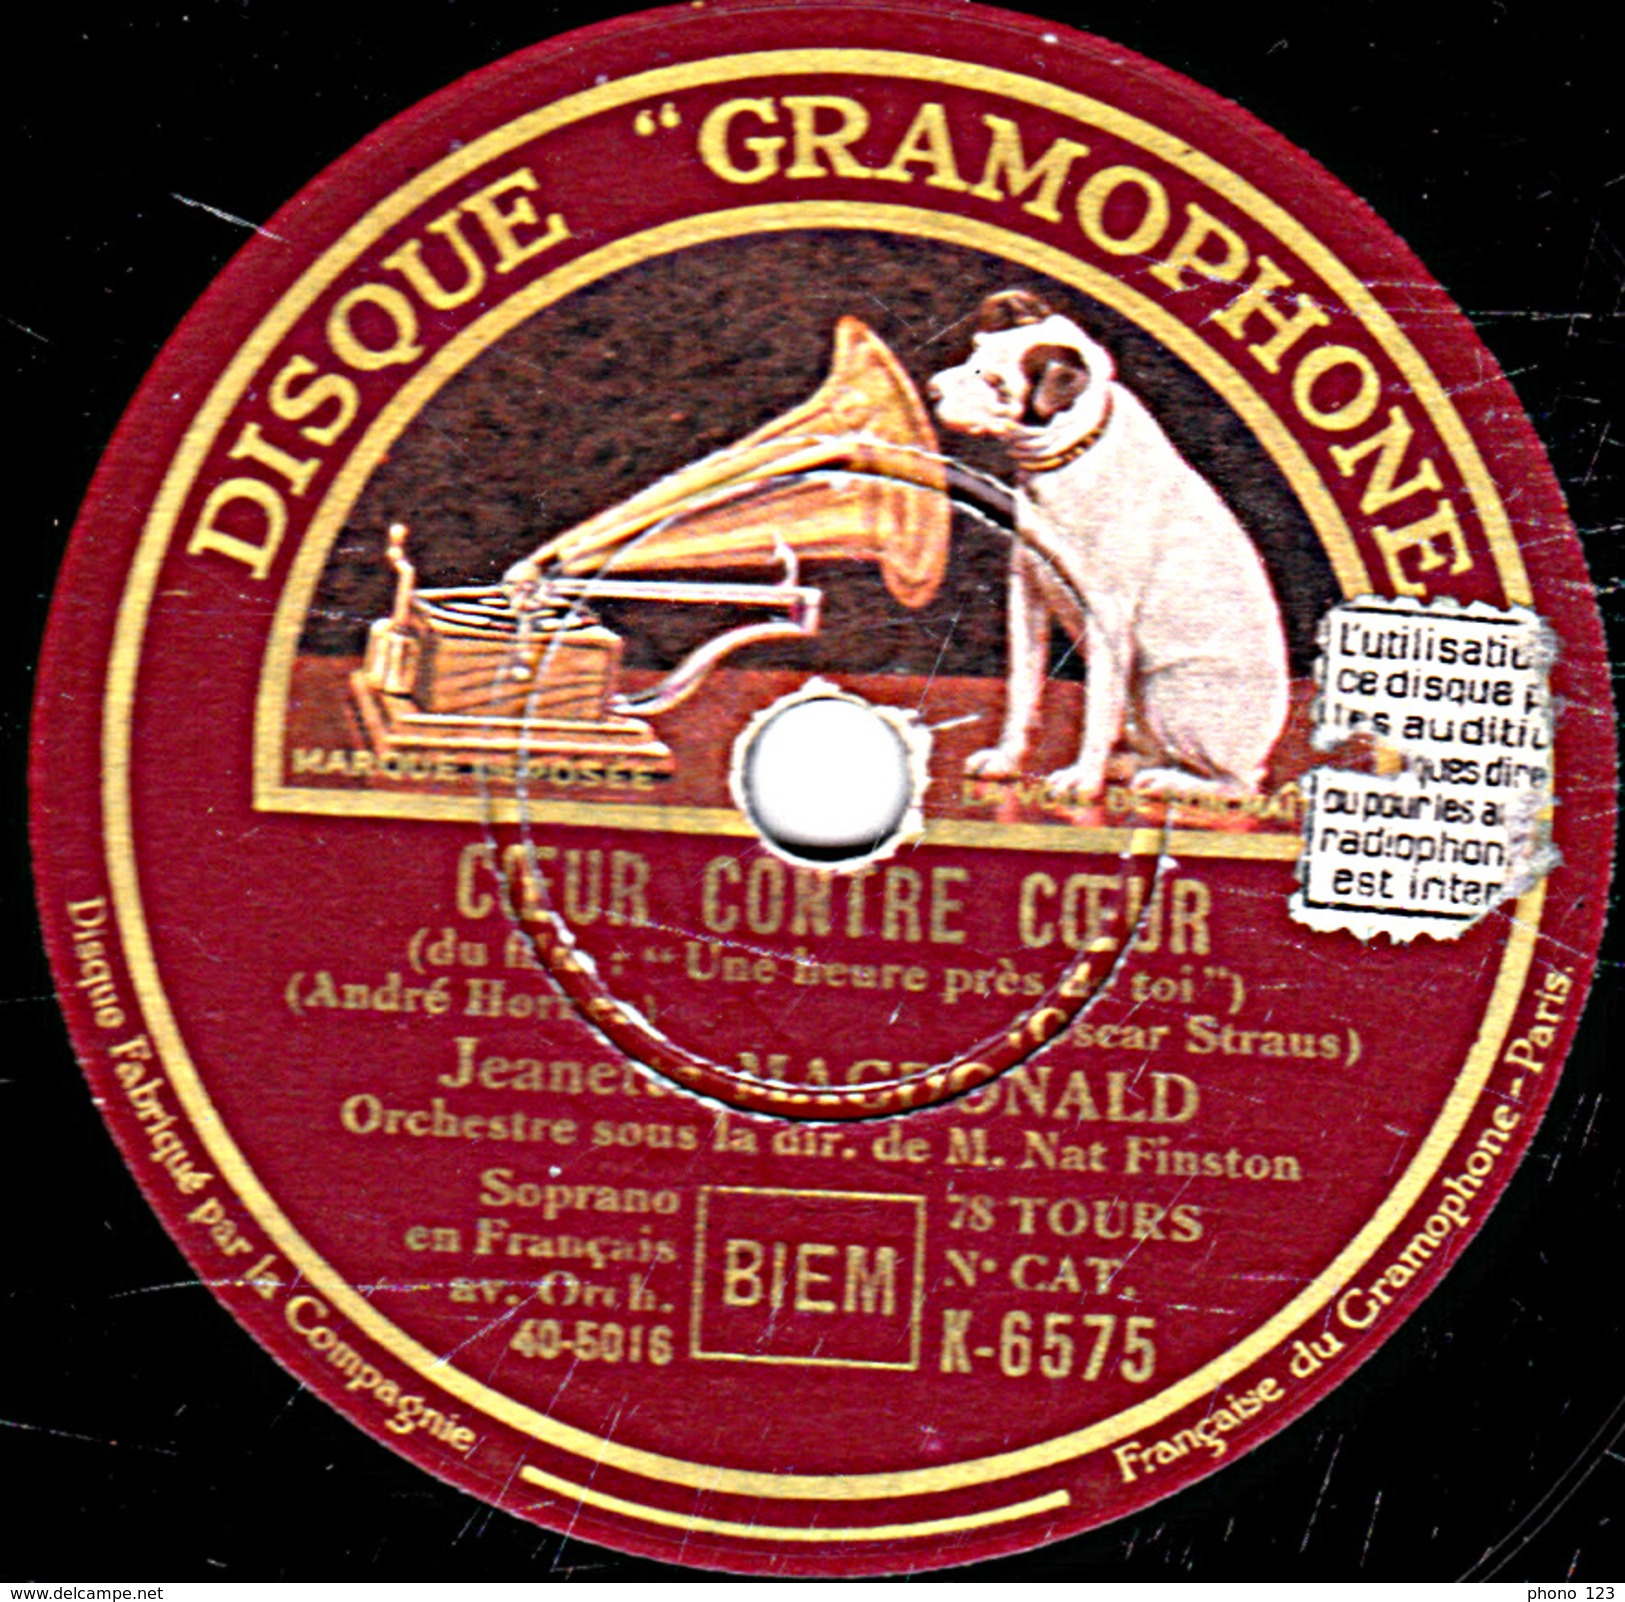 78 T. - 25 Cm - état  B - Jeanette MAC-DONALT - UNE HEURE PRES DE TOI - COEUR CONTRE COEUR - 78 T - Disques Pour Gramophone